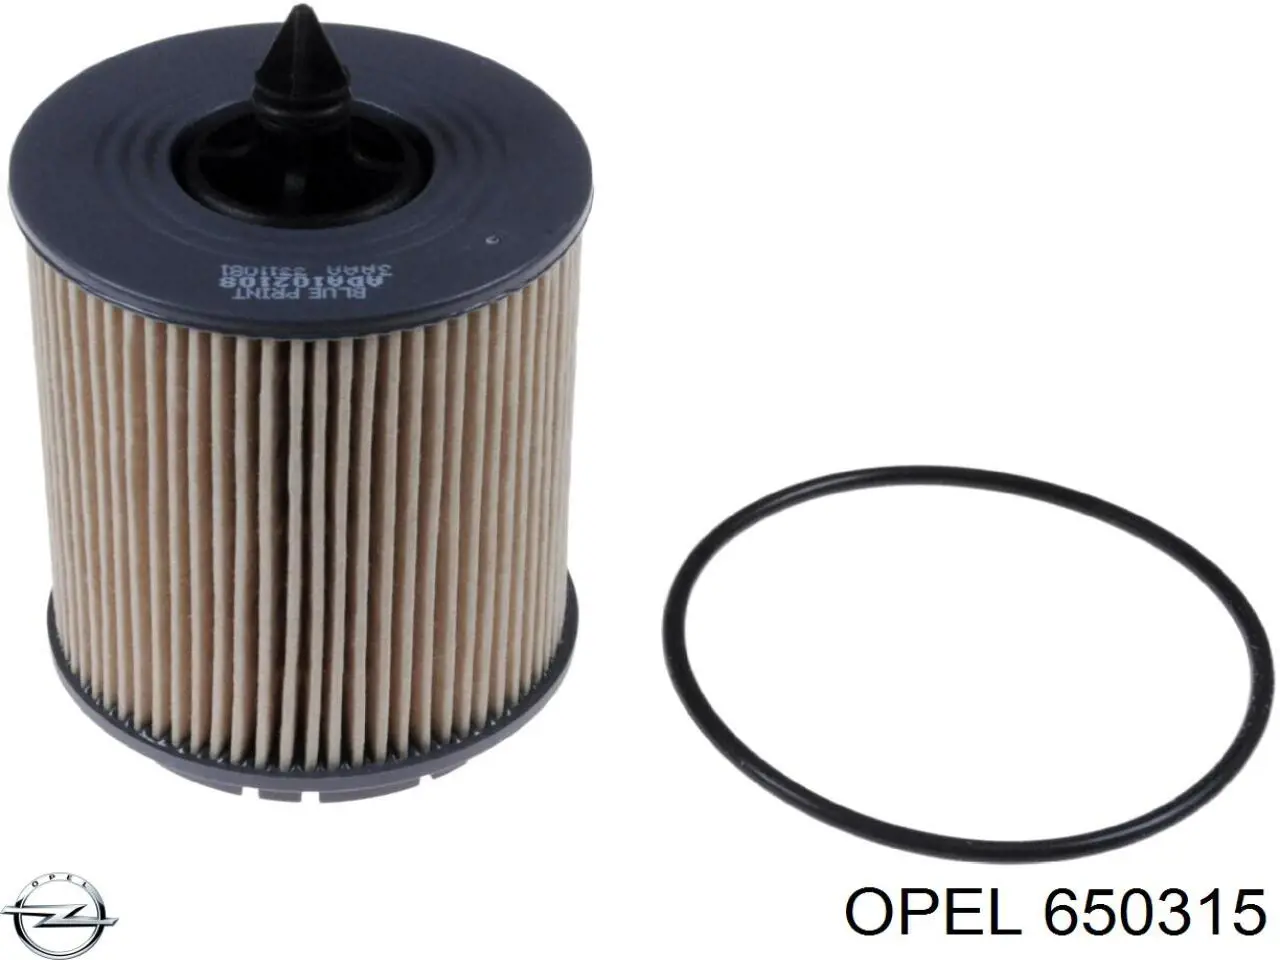 650315 Opel filtro de aceite